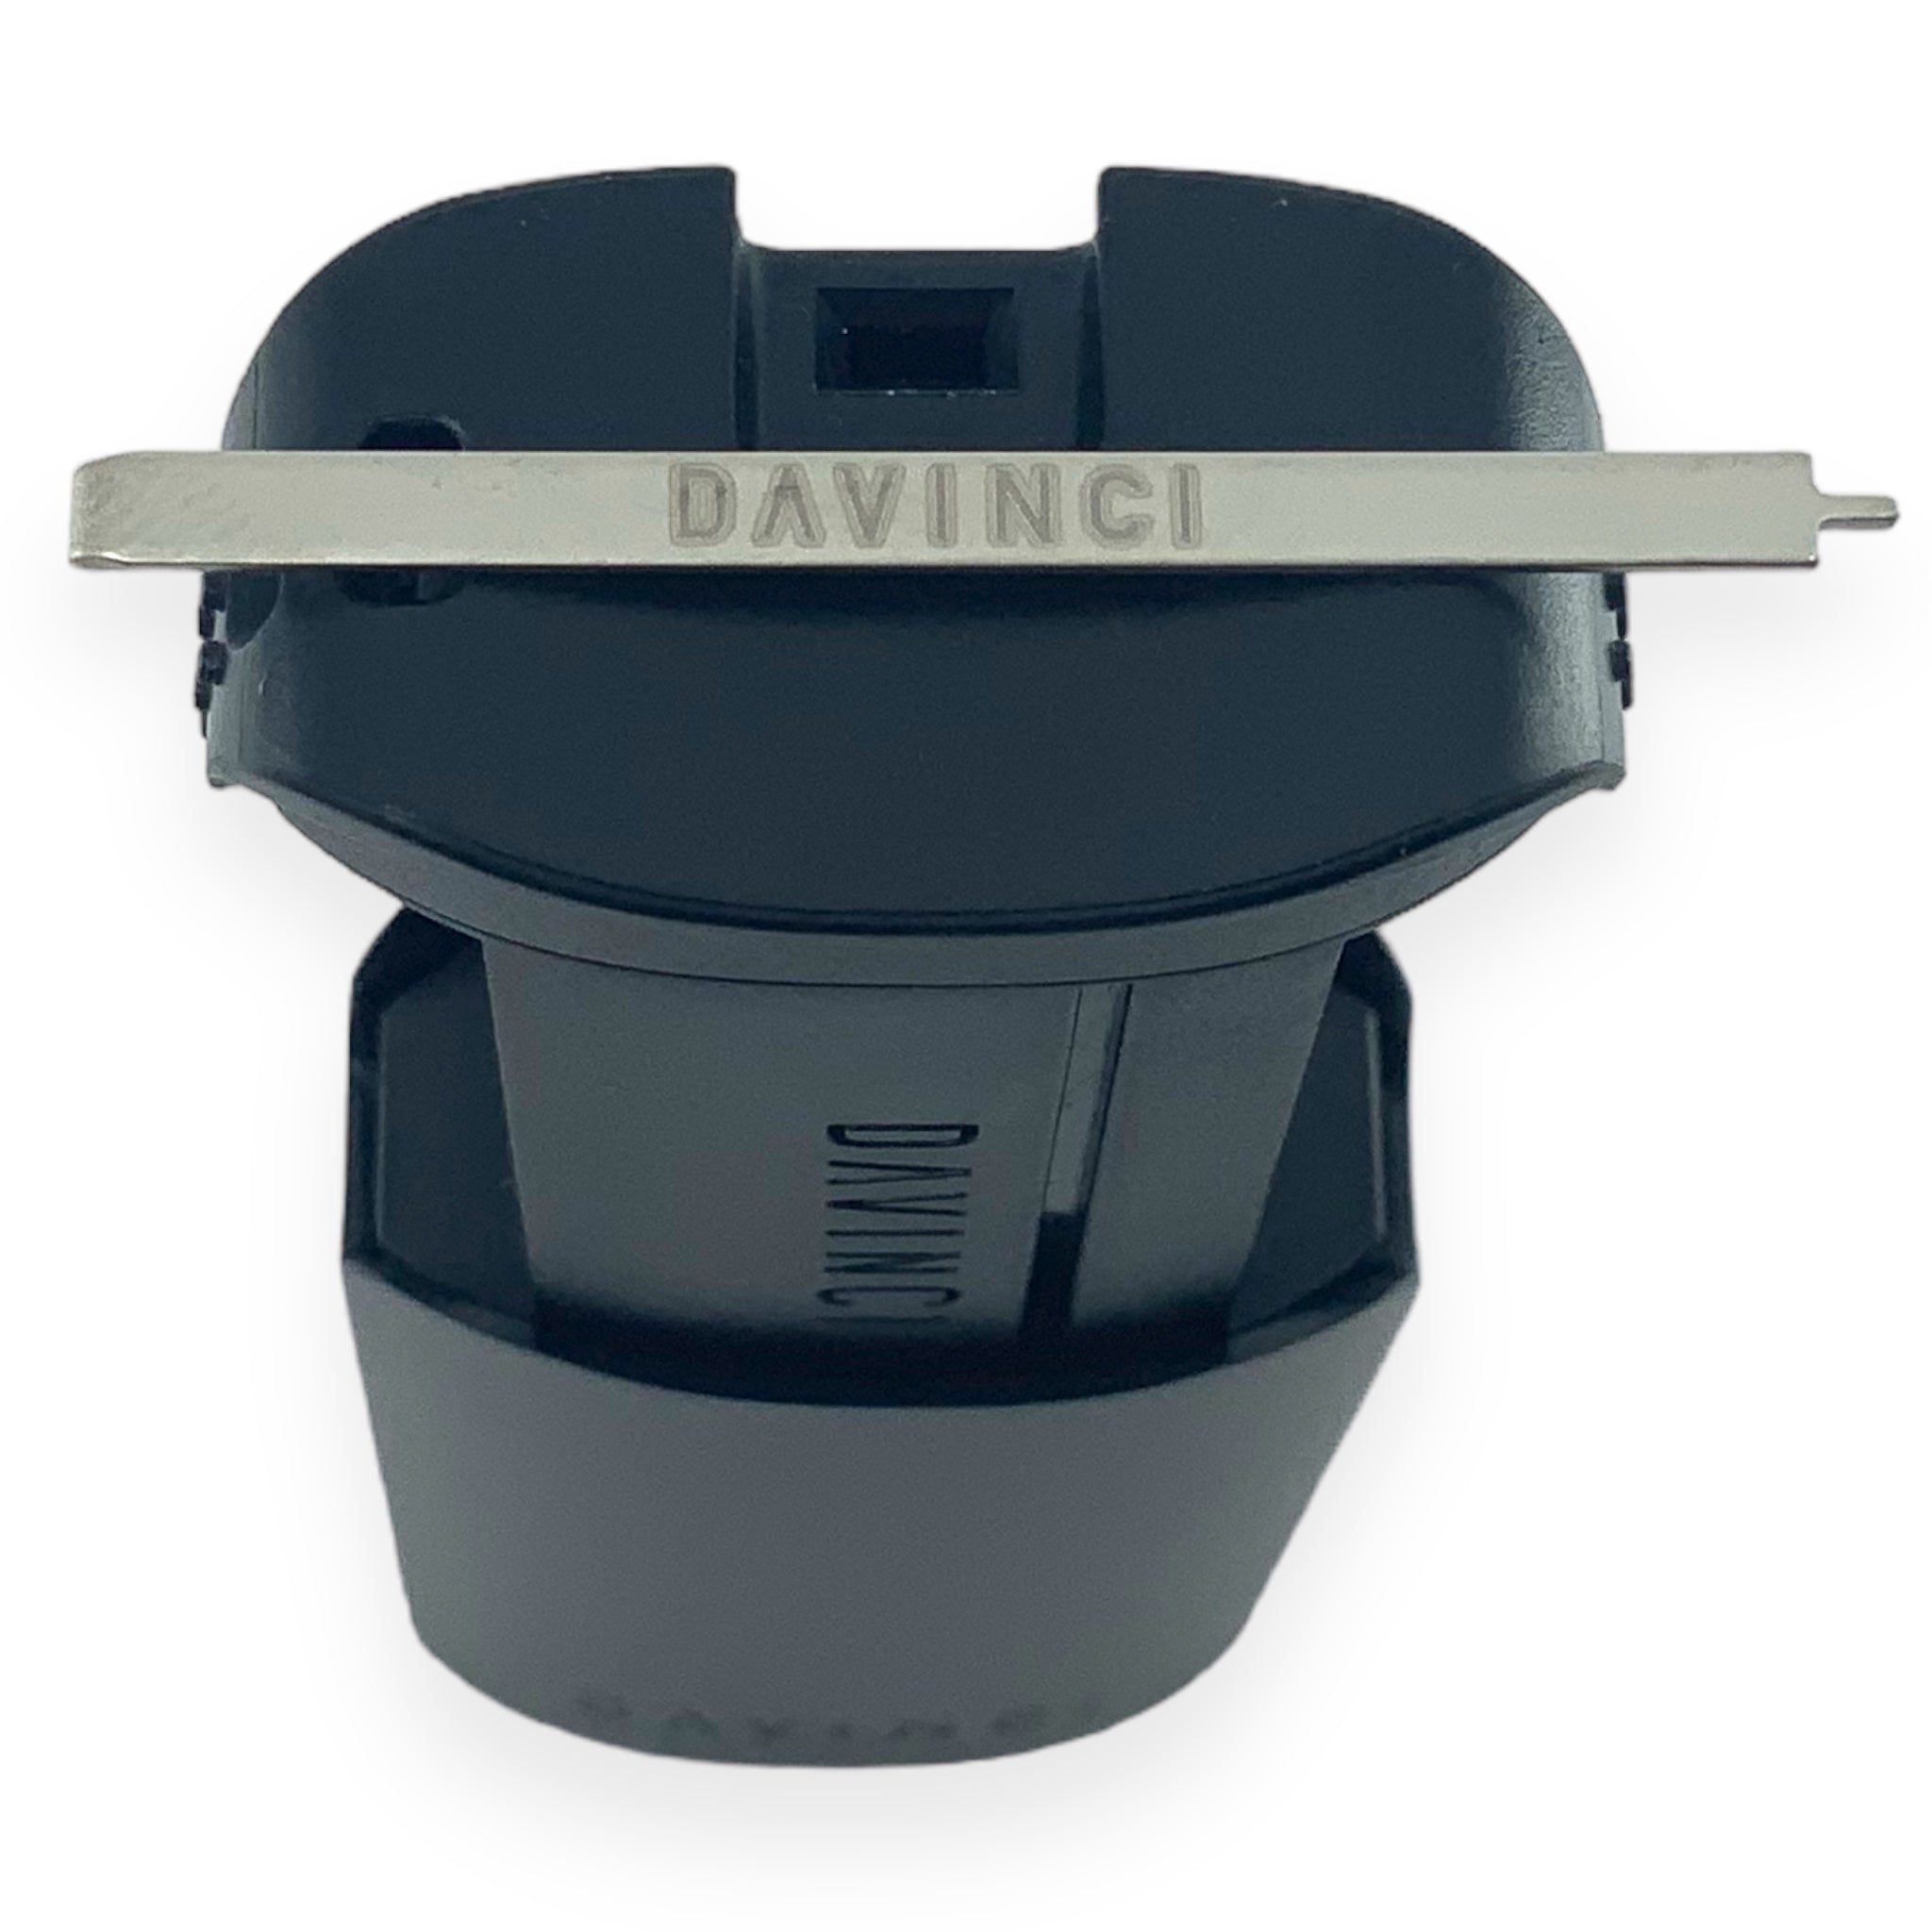 DaVinci MIQRO Kapselbehälter Details Werkzeug